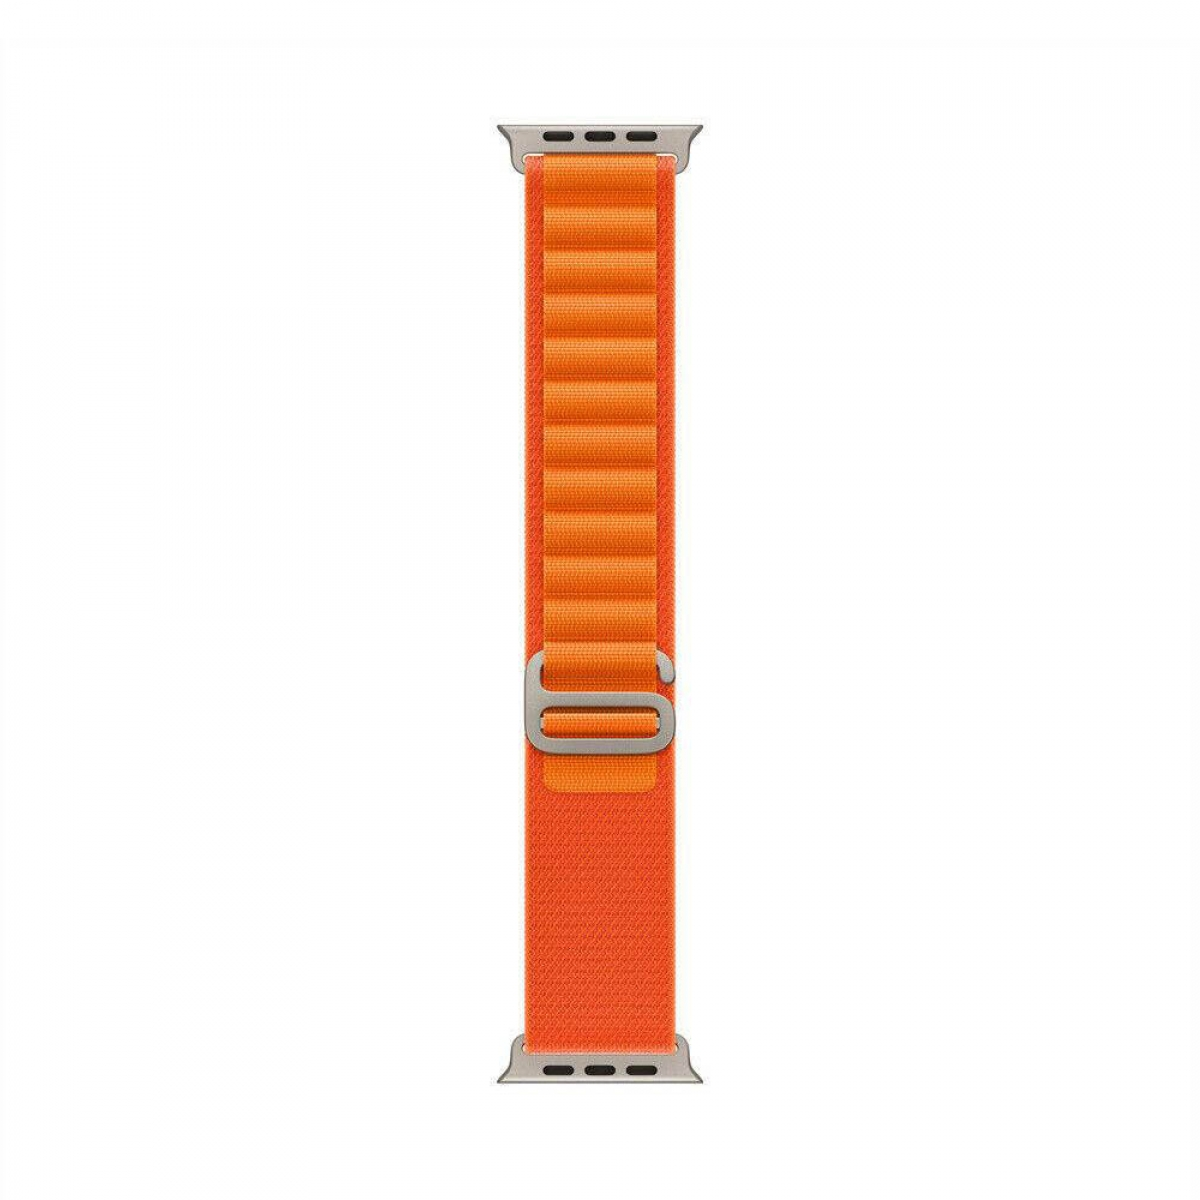 44mm, CASEONLINE Watch SE 2022 Artic, Apple, Orange Smartband,